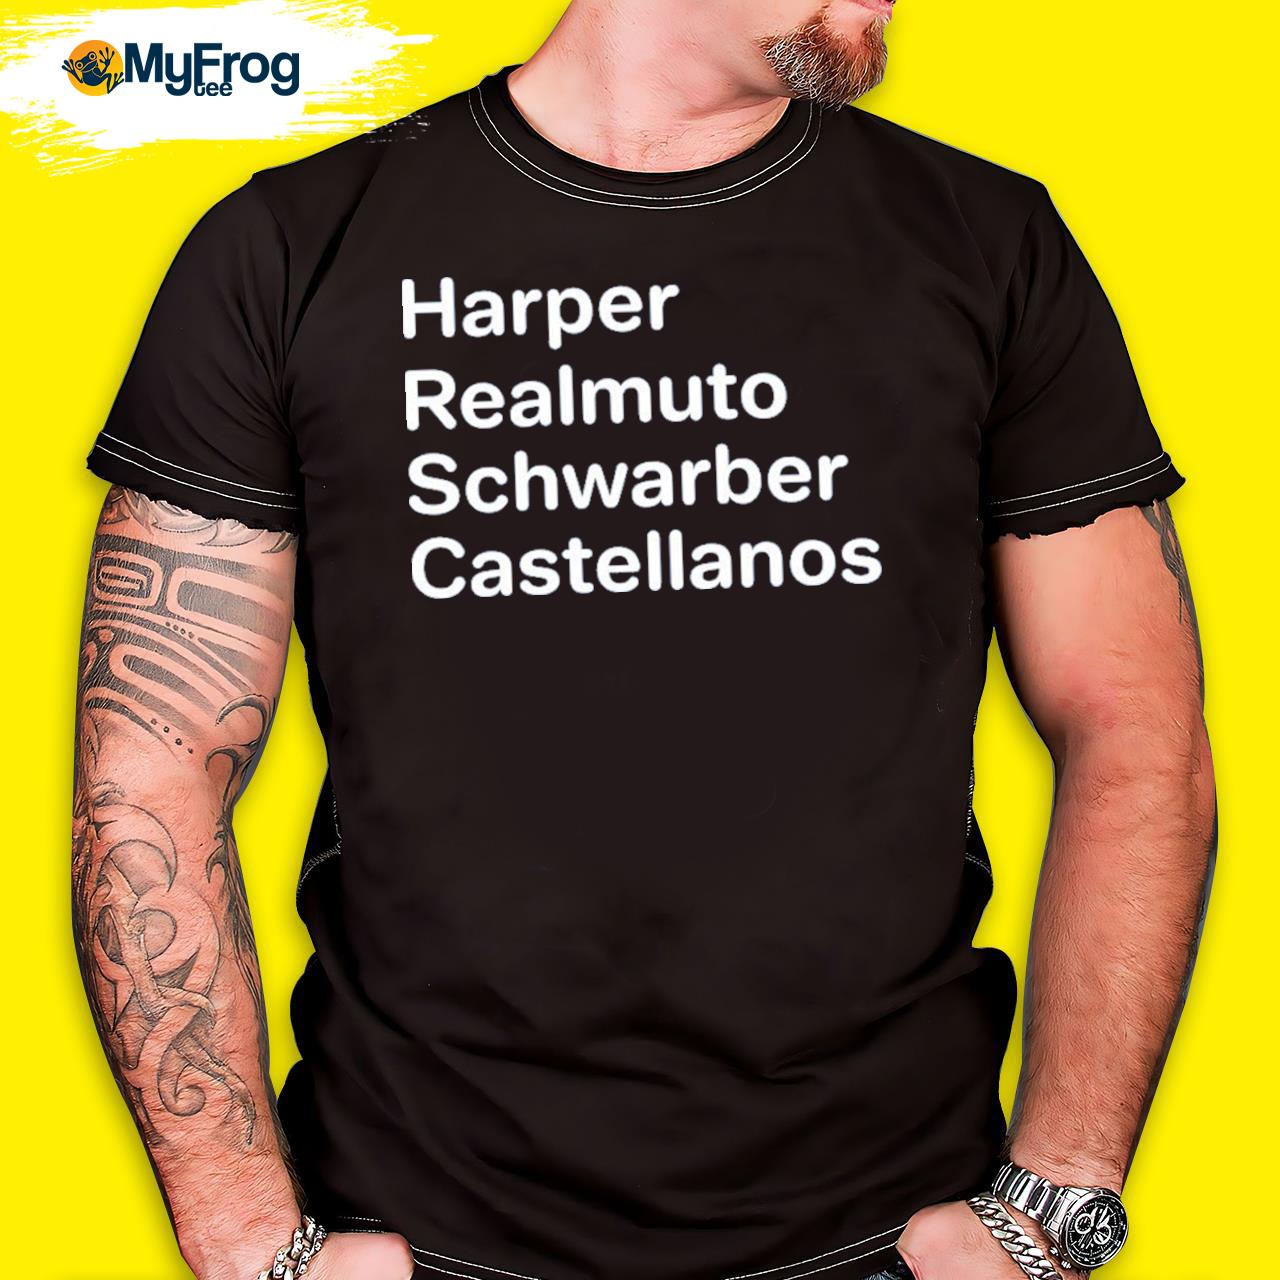 Harper realmuto schwarber castellanos new shirt